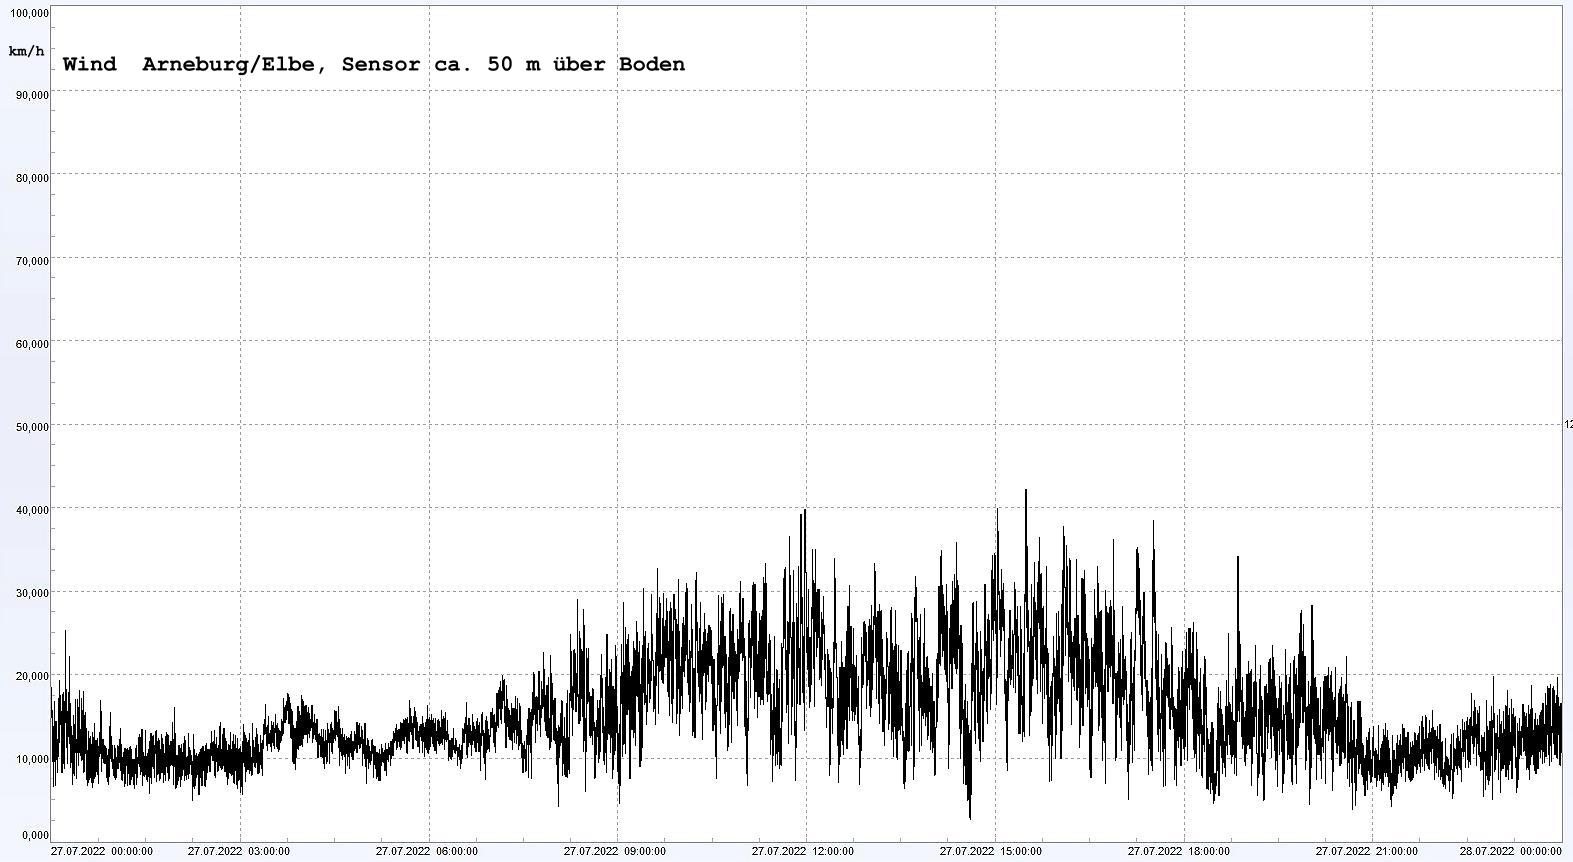 Arneburg Winddaten 27.07.2022, 
  Sensor auf Gebude, ca. 50 m ber Erdboden, 5s-Aufzeichnung